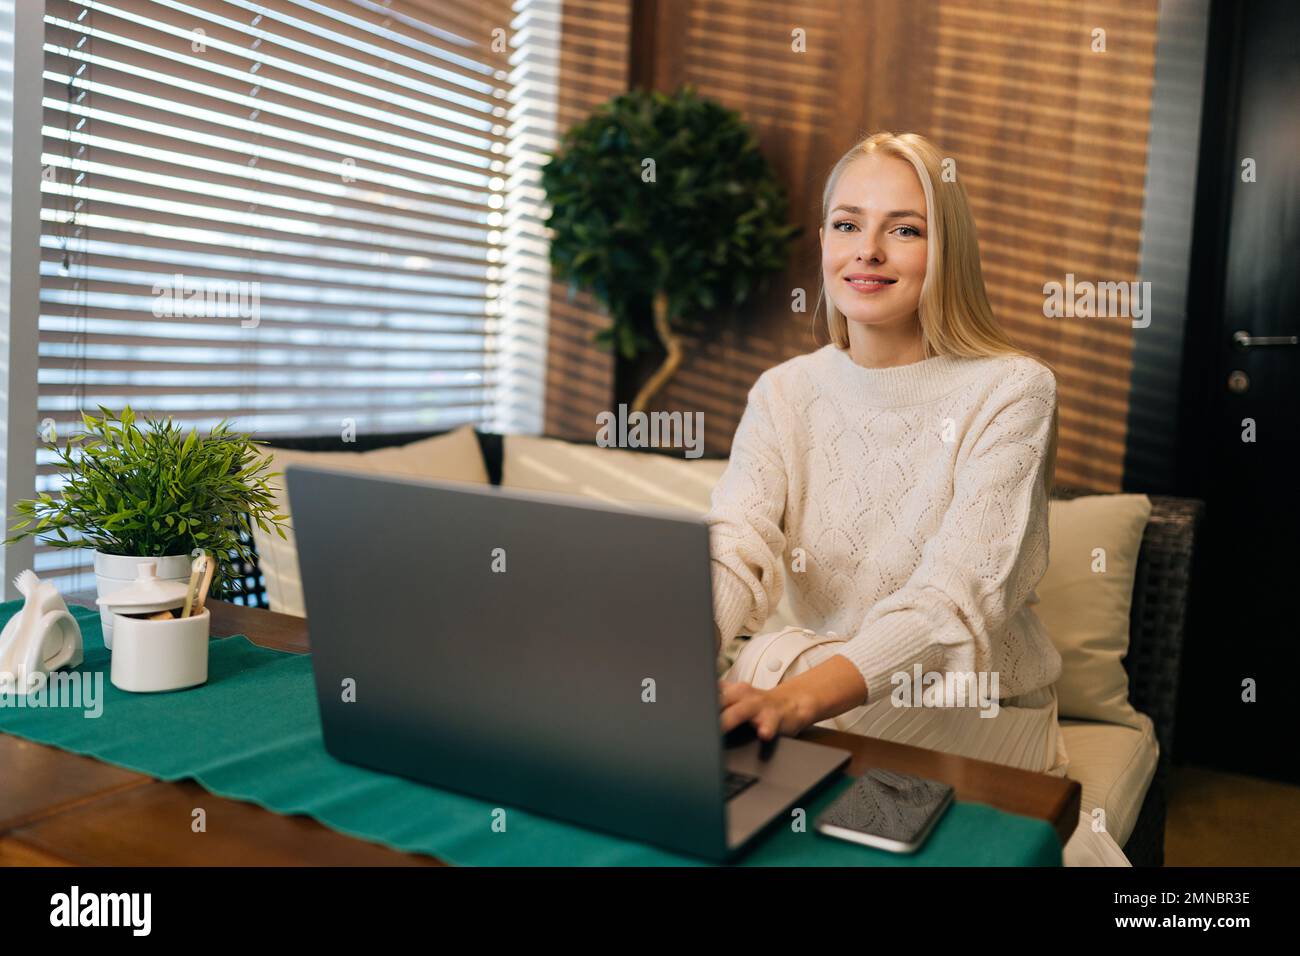 Porträt einer charmanten jungen Frau mit langen blonden Haaren, die am Tisch im Café sitzt, während sie einen Laptop benutzt und in die Kamera lächelt. Stockfoto